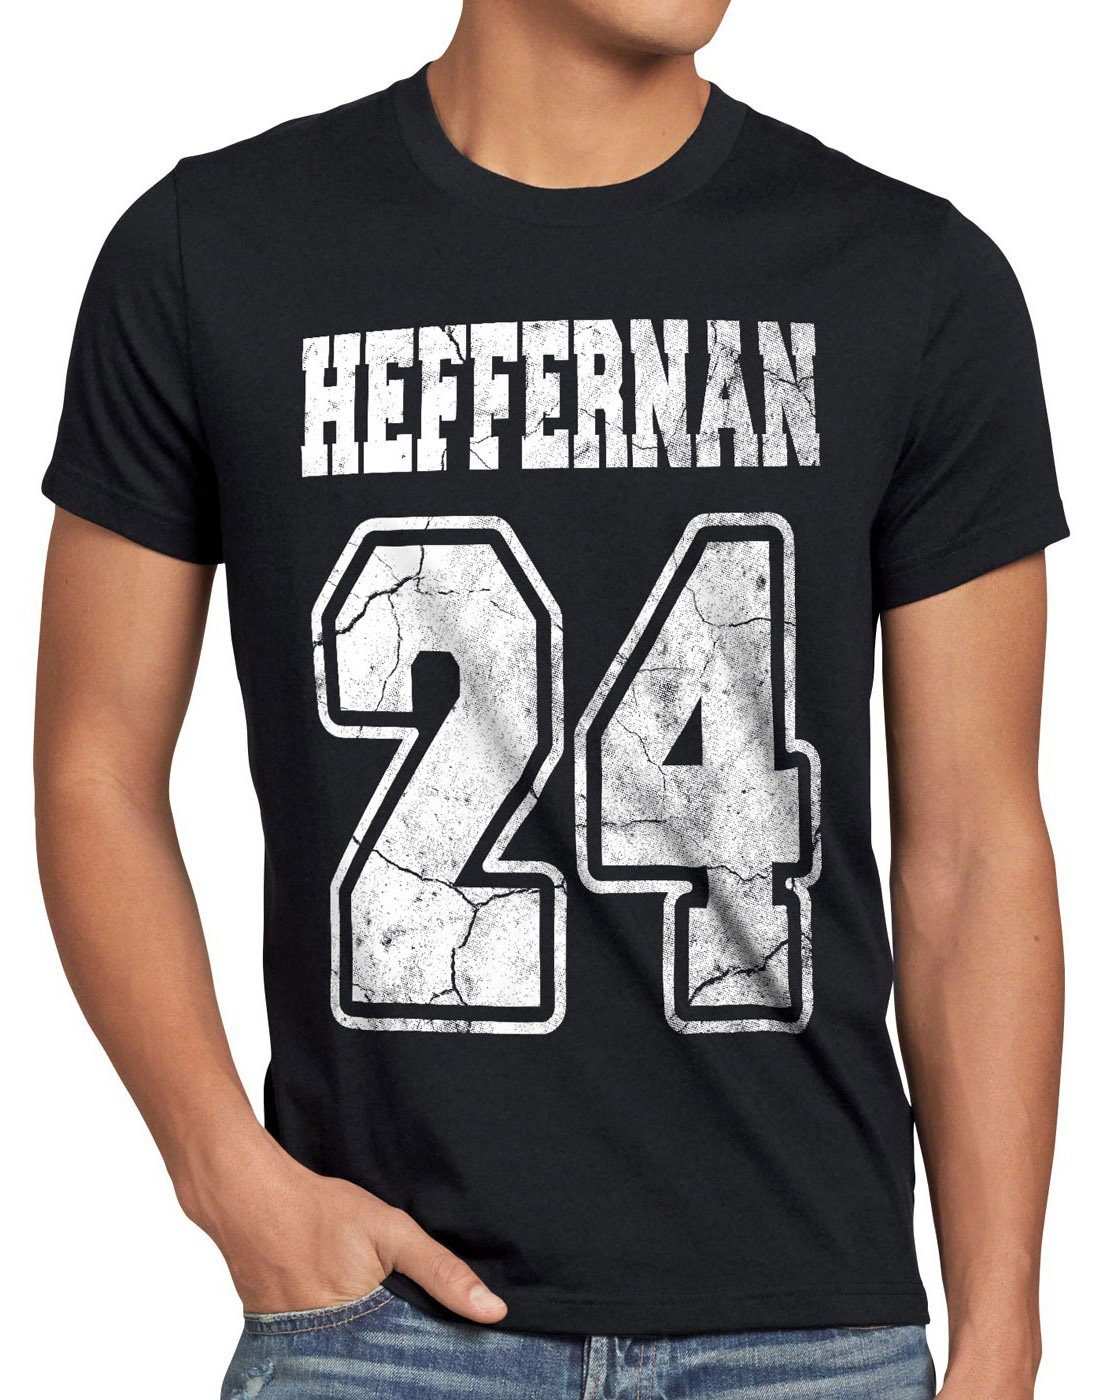 style3 Print-Shirt Herren 24 schwarz the doug T-Shirt queens sitcom Heffernan spooner IPS coopers of king